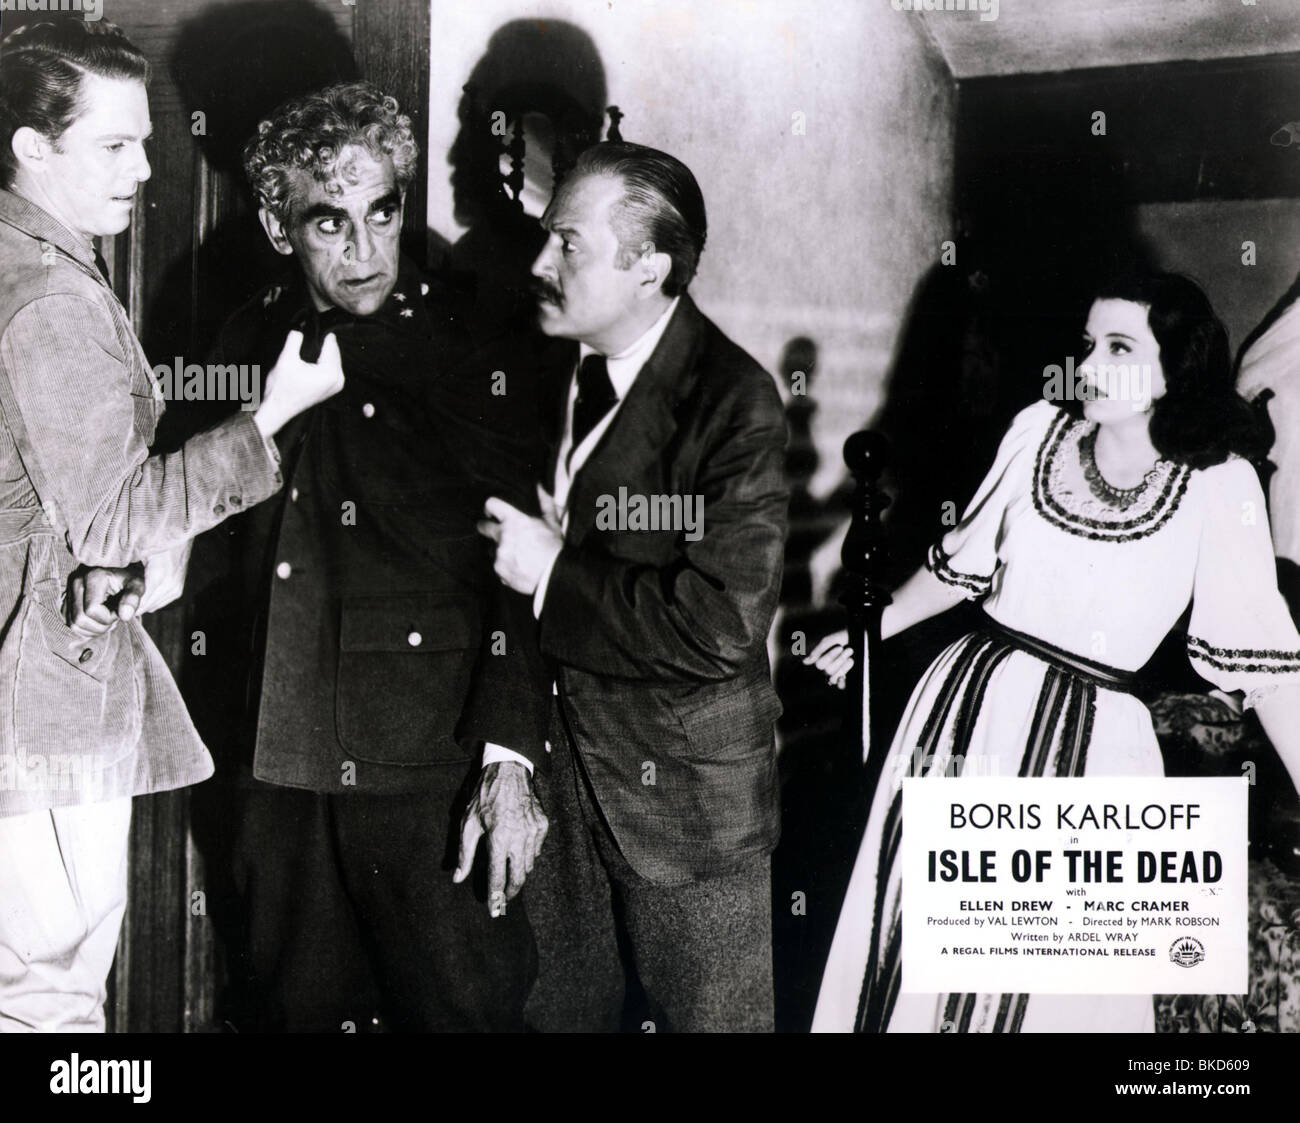 ISLE OF THE DEAD (1945) MARK CRAMER, BORIS KARLOFF, ERNST DEUTSCH, ELLEN DREW IODD 006P Stock Photo